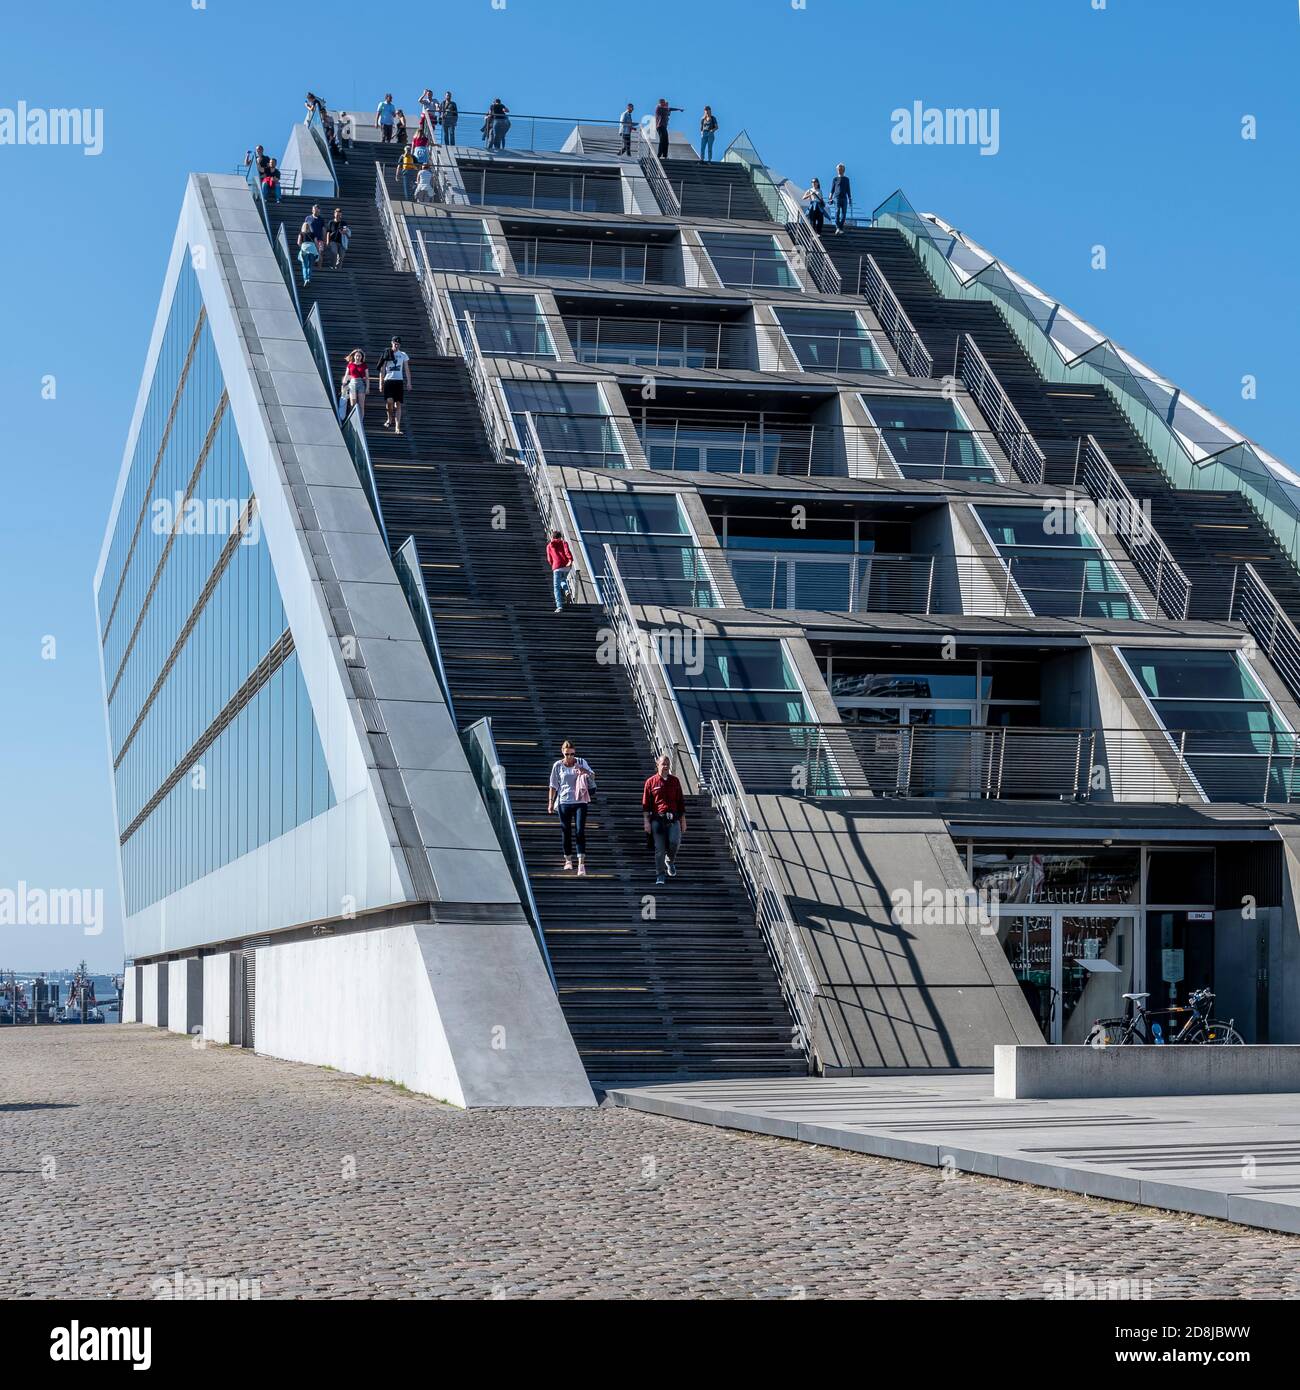 Este edificio en forma de barco es el edificio de oficinas de Dockland en Hamburgo. Encima de las oficinas hay escalones hasta la plataforma de observación en el techo. Foto de stock